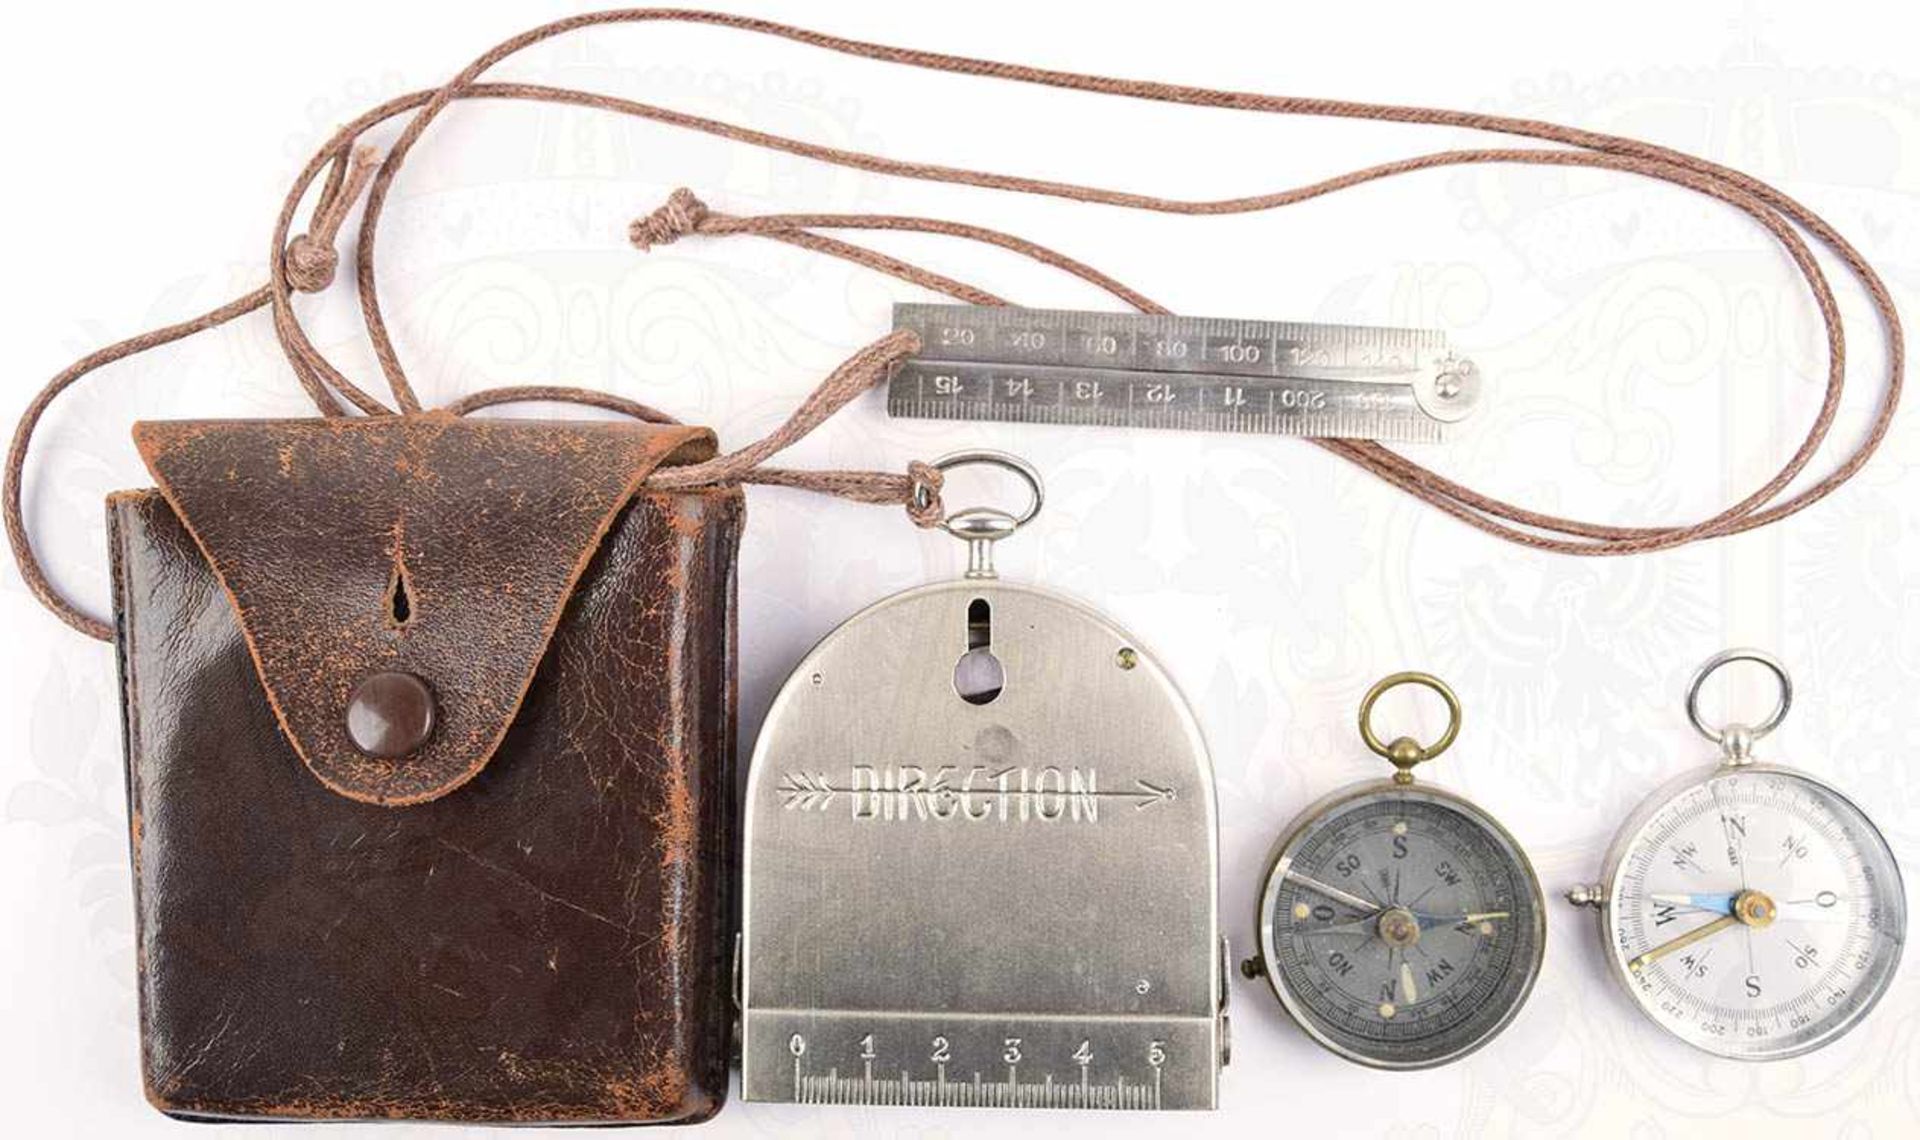 3 MARSCHKOMPASSE: Bezard-Kompass, Modell UBK III der 50er Jahre, in Leder-Etui mit dazugehörigem